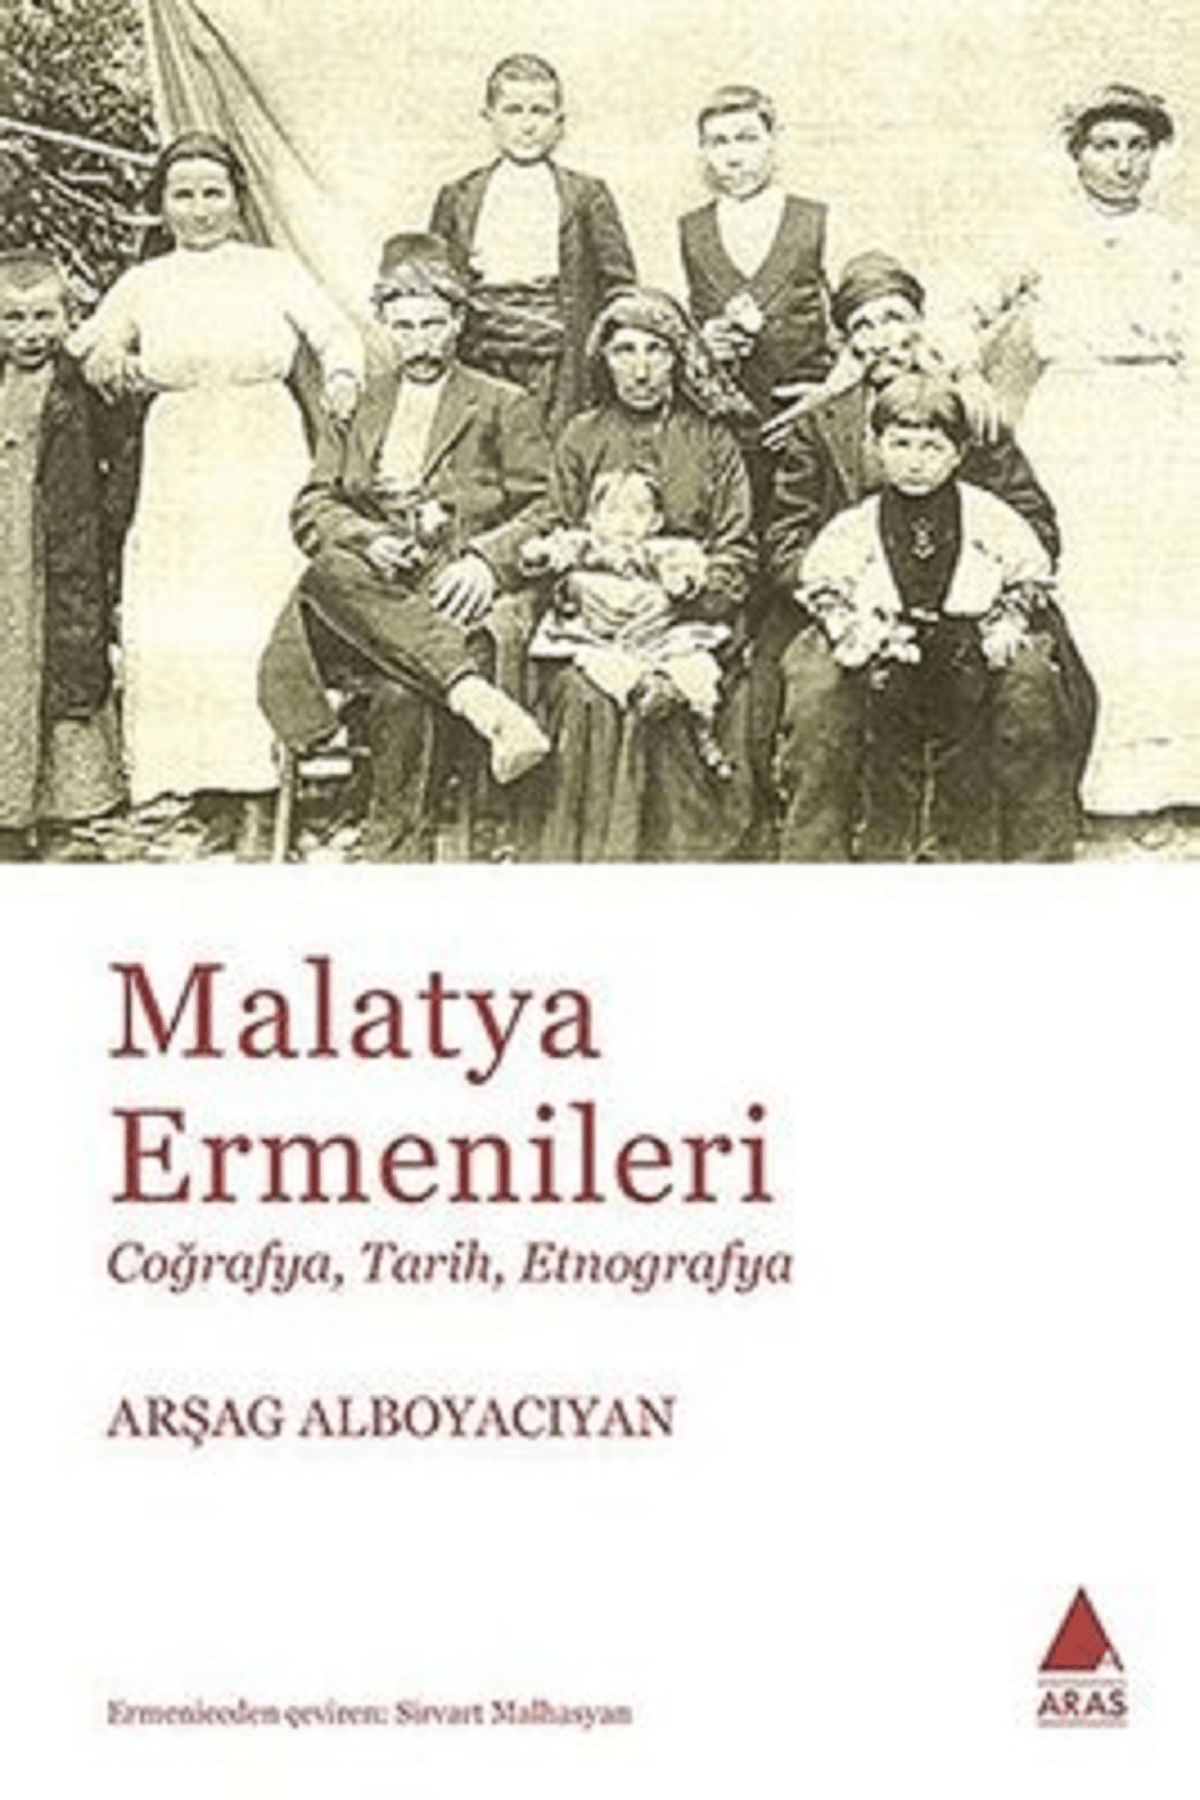 Aras Yayıncılık Malatya Ermenileri - Aras Yayınları - Arşag Alboyacıyan Kitabı